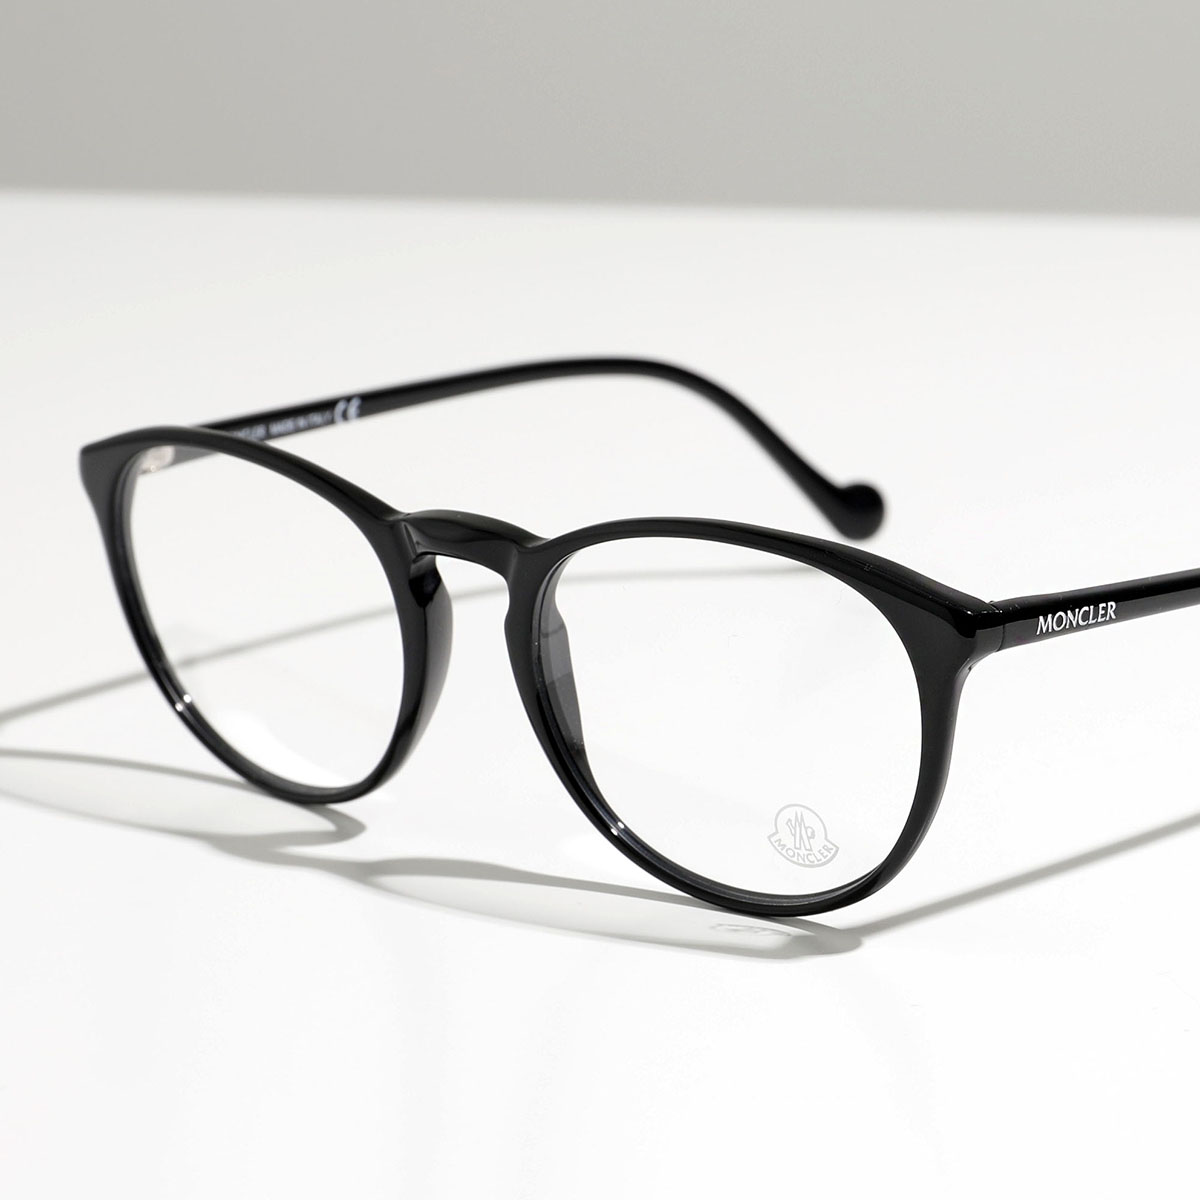 【返品保証対象】MONCLER モンクレール メガネ ML5104 メンズ ウェリントン型 めがね 伊達メガネ ダテ 眼鏡 ロゴ アイウェア  黒縁メガネ べっ甲 カラー2色